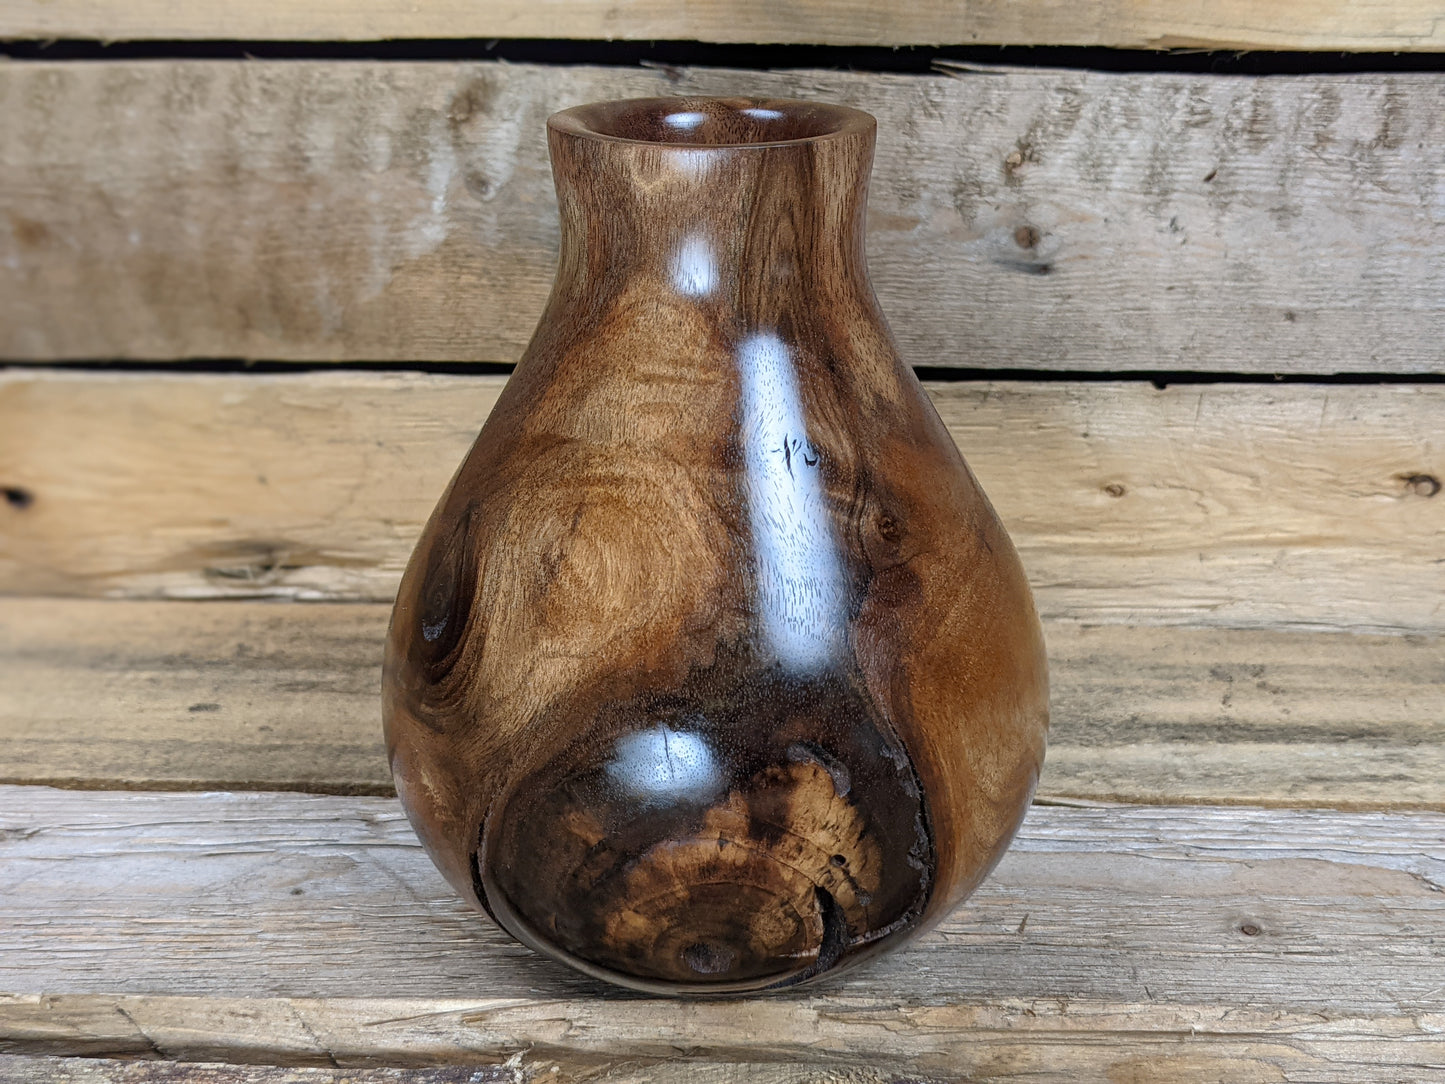 Knotty black walnut dry vase